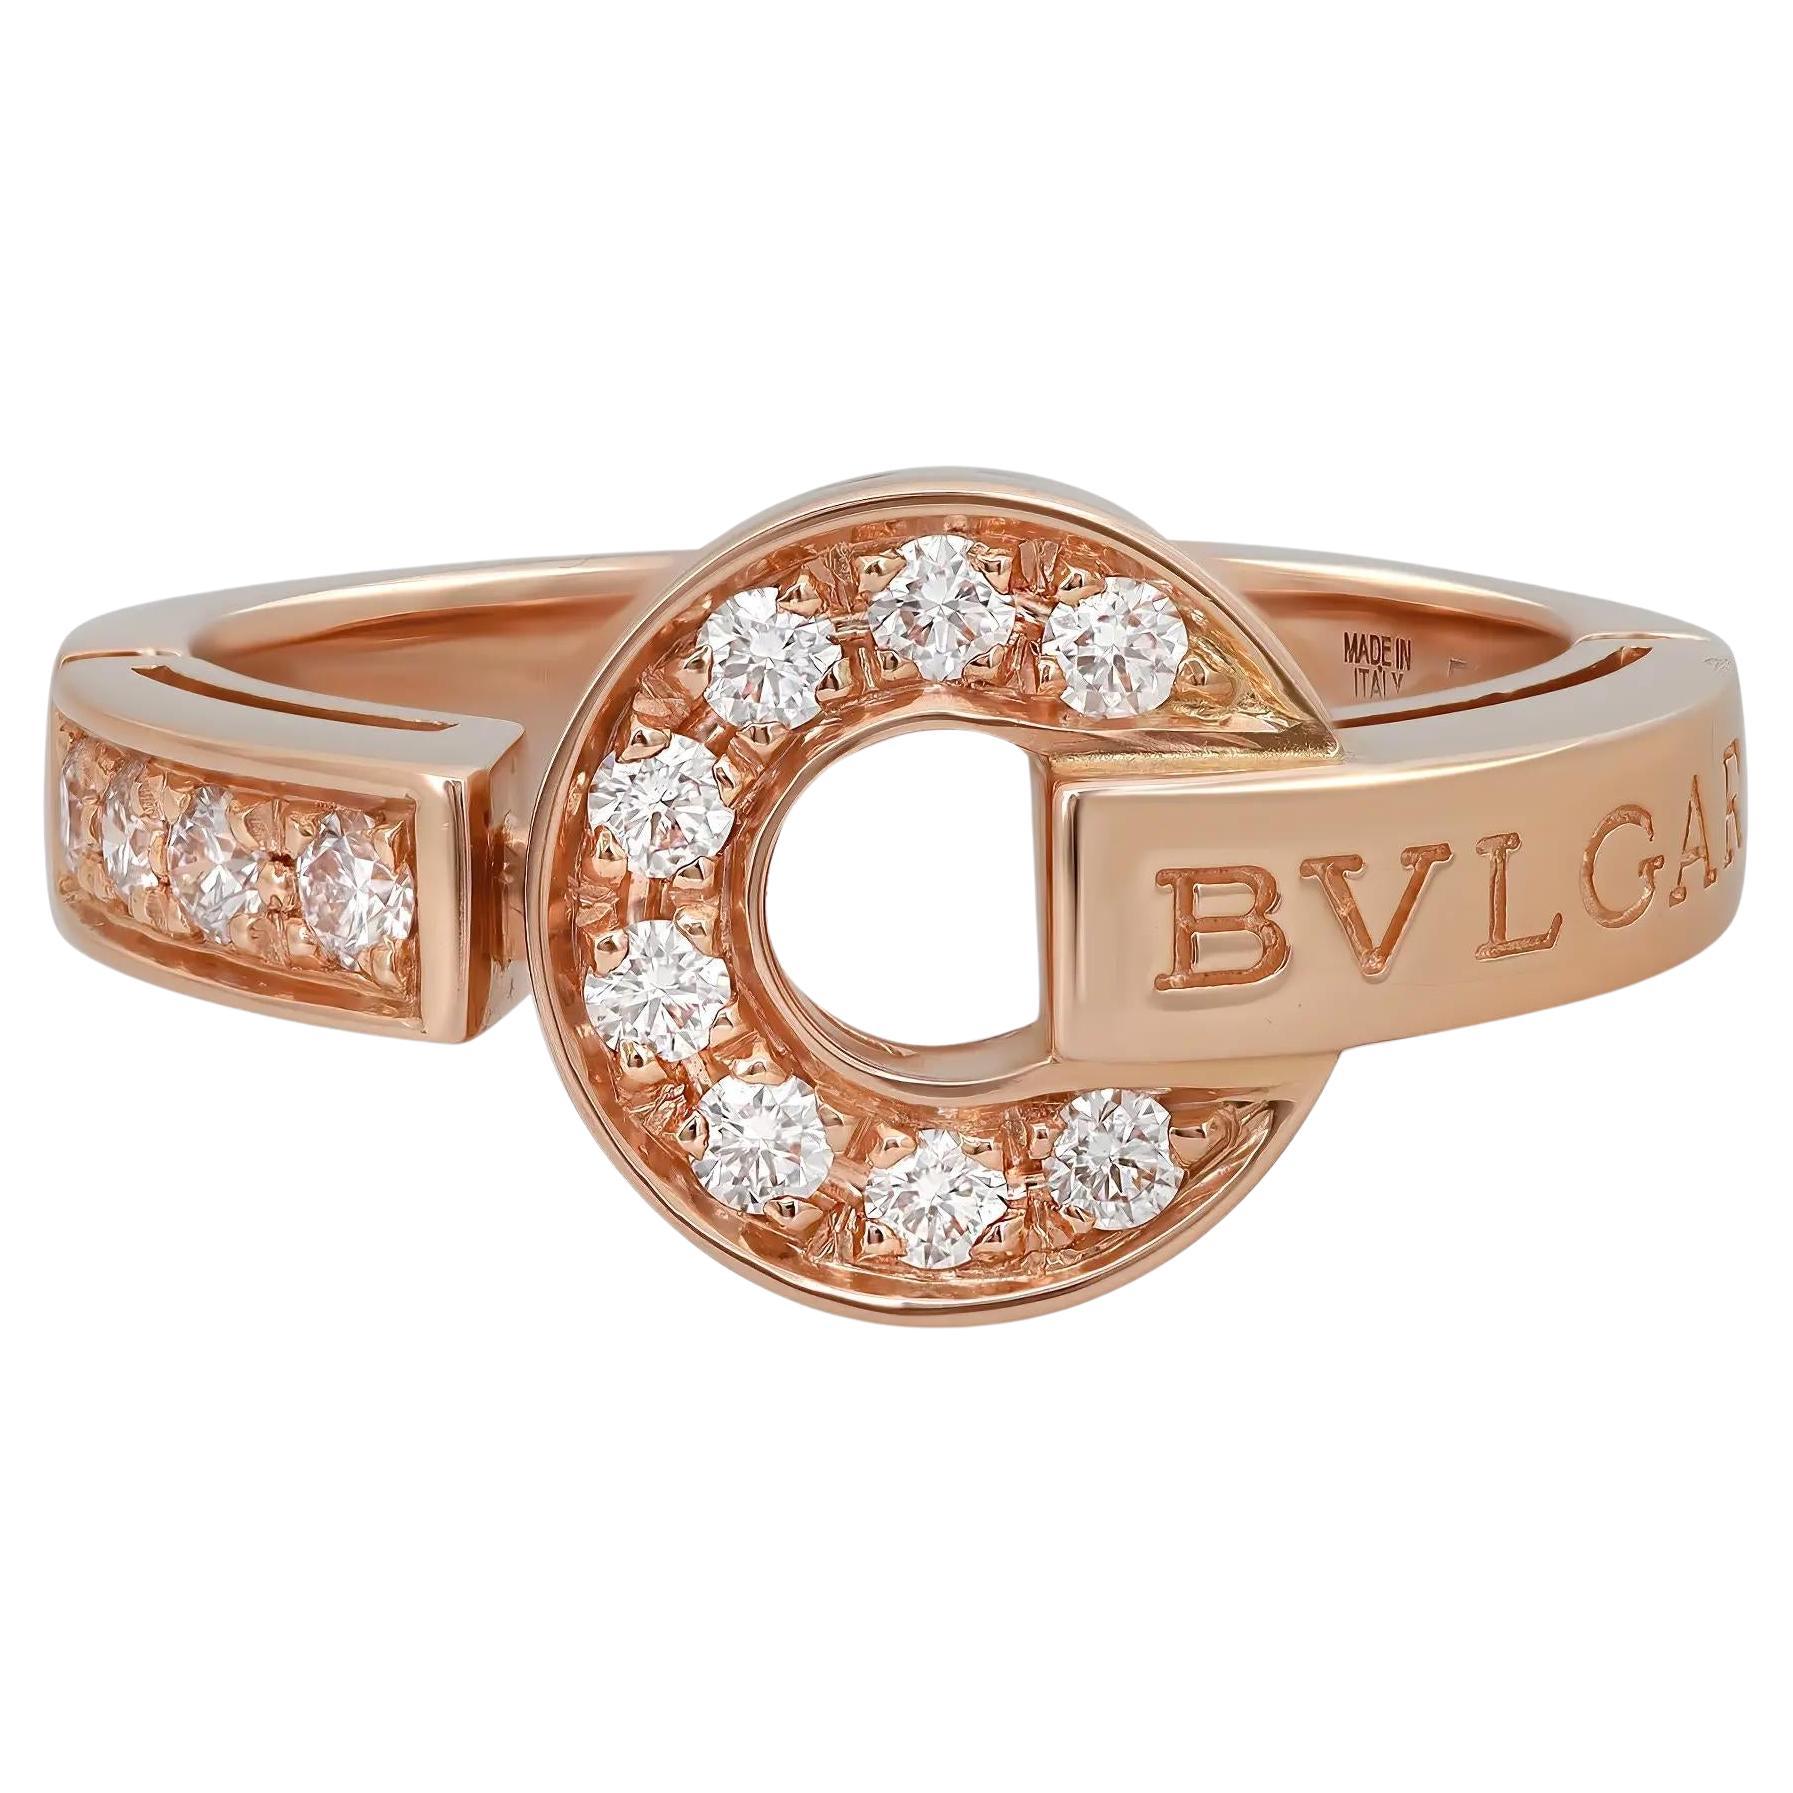 Bvlgari Bvlgari Diamond Ring 18K Rose Gold Size 53 US 6.5